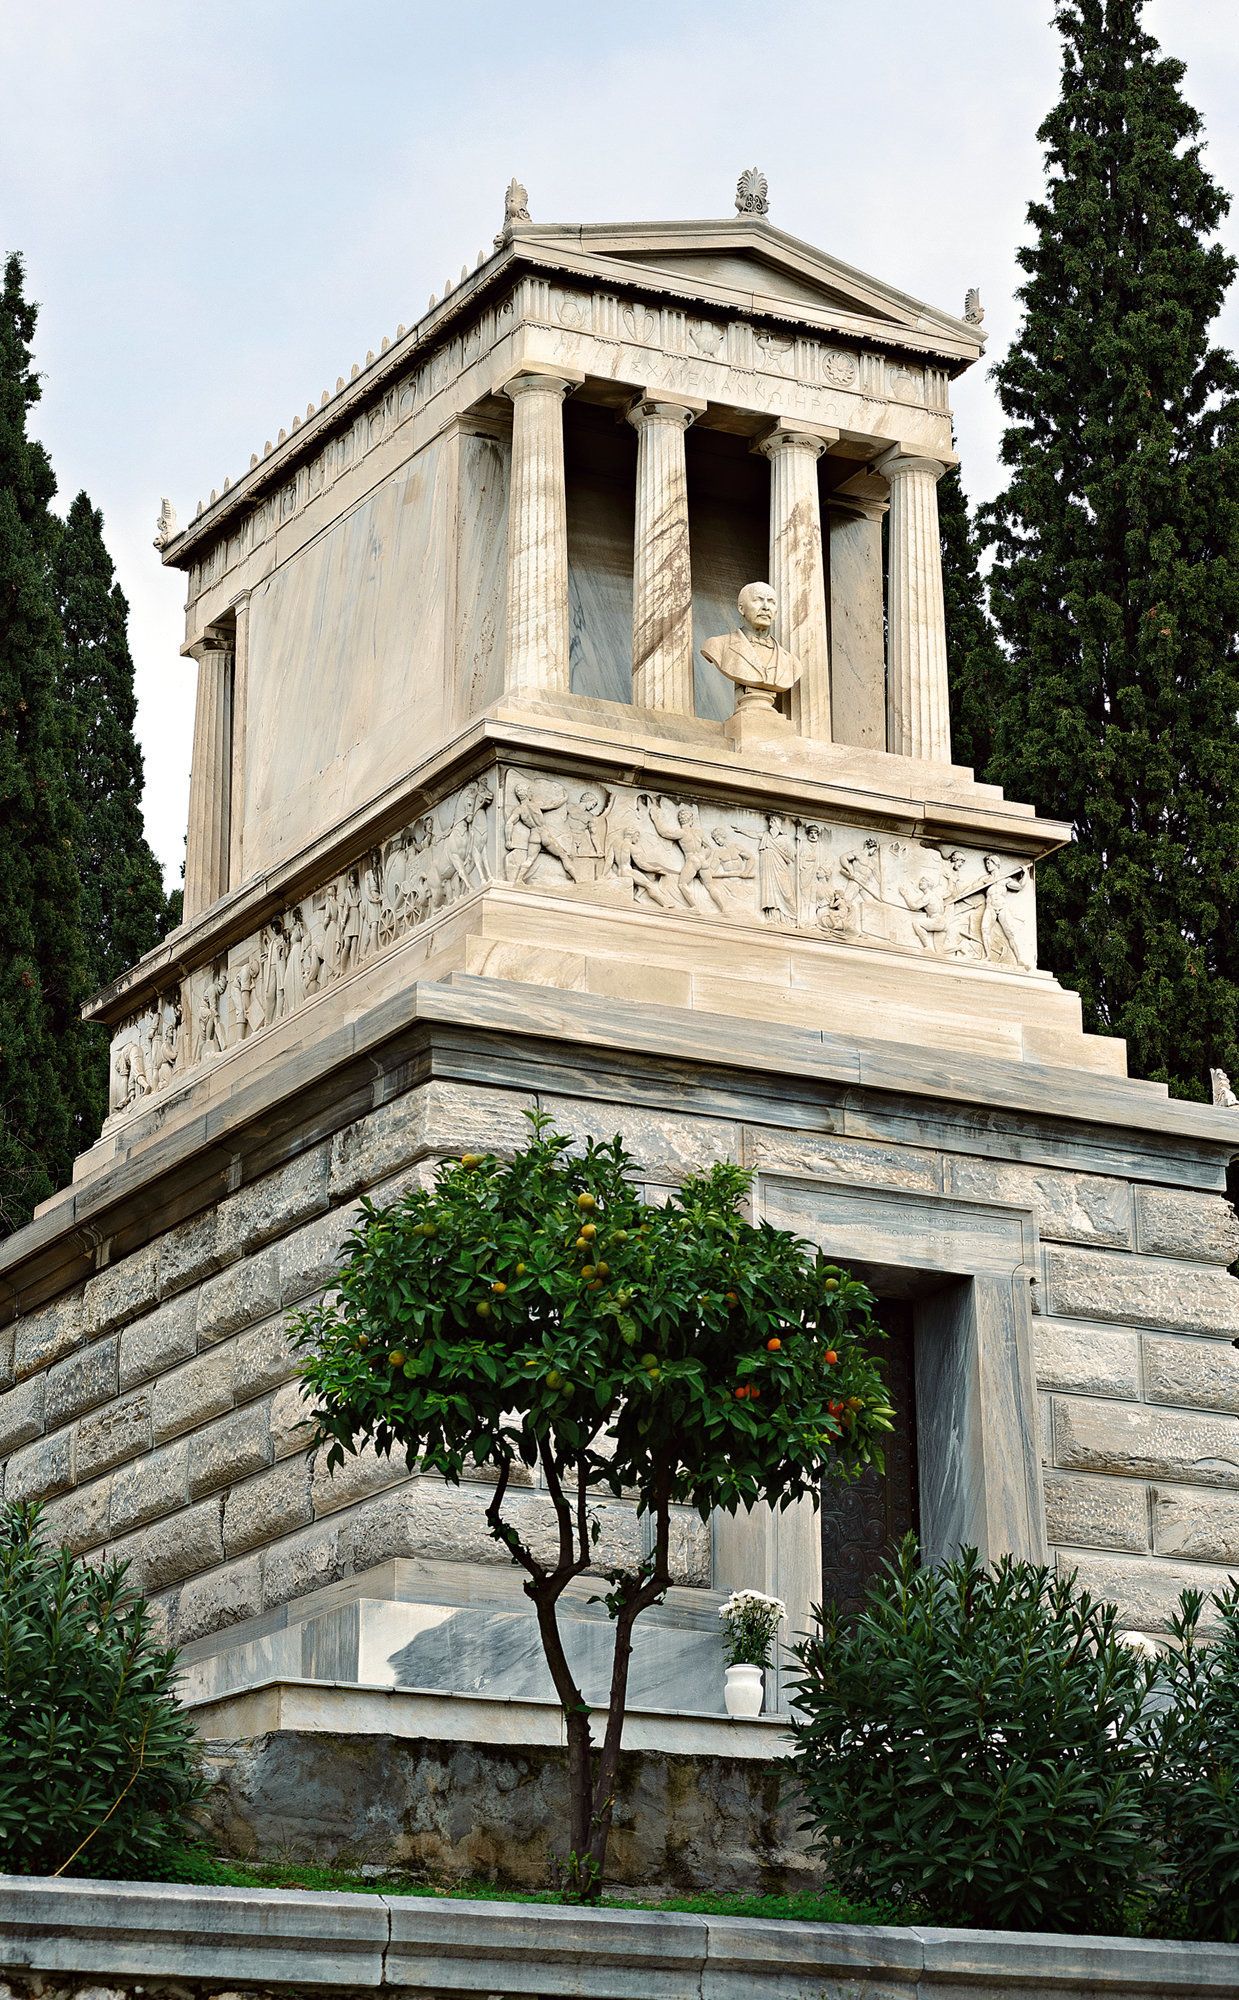 Ναϊσκόμορφο μνημείο του Ερρίκου Σλήμαν, έργο του αρχιτέκτονα Ερνέστου Τσίλλερ και του γλύπτη Γεωργίου Ξενάκη.